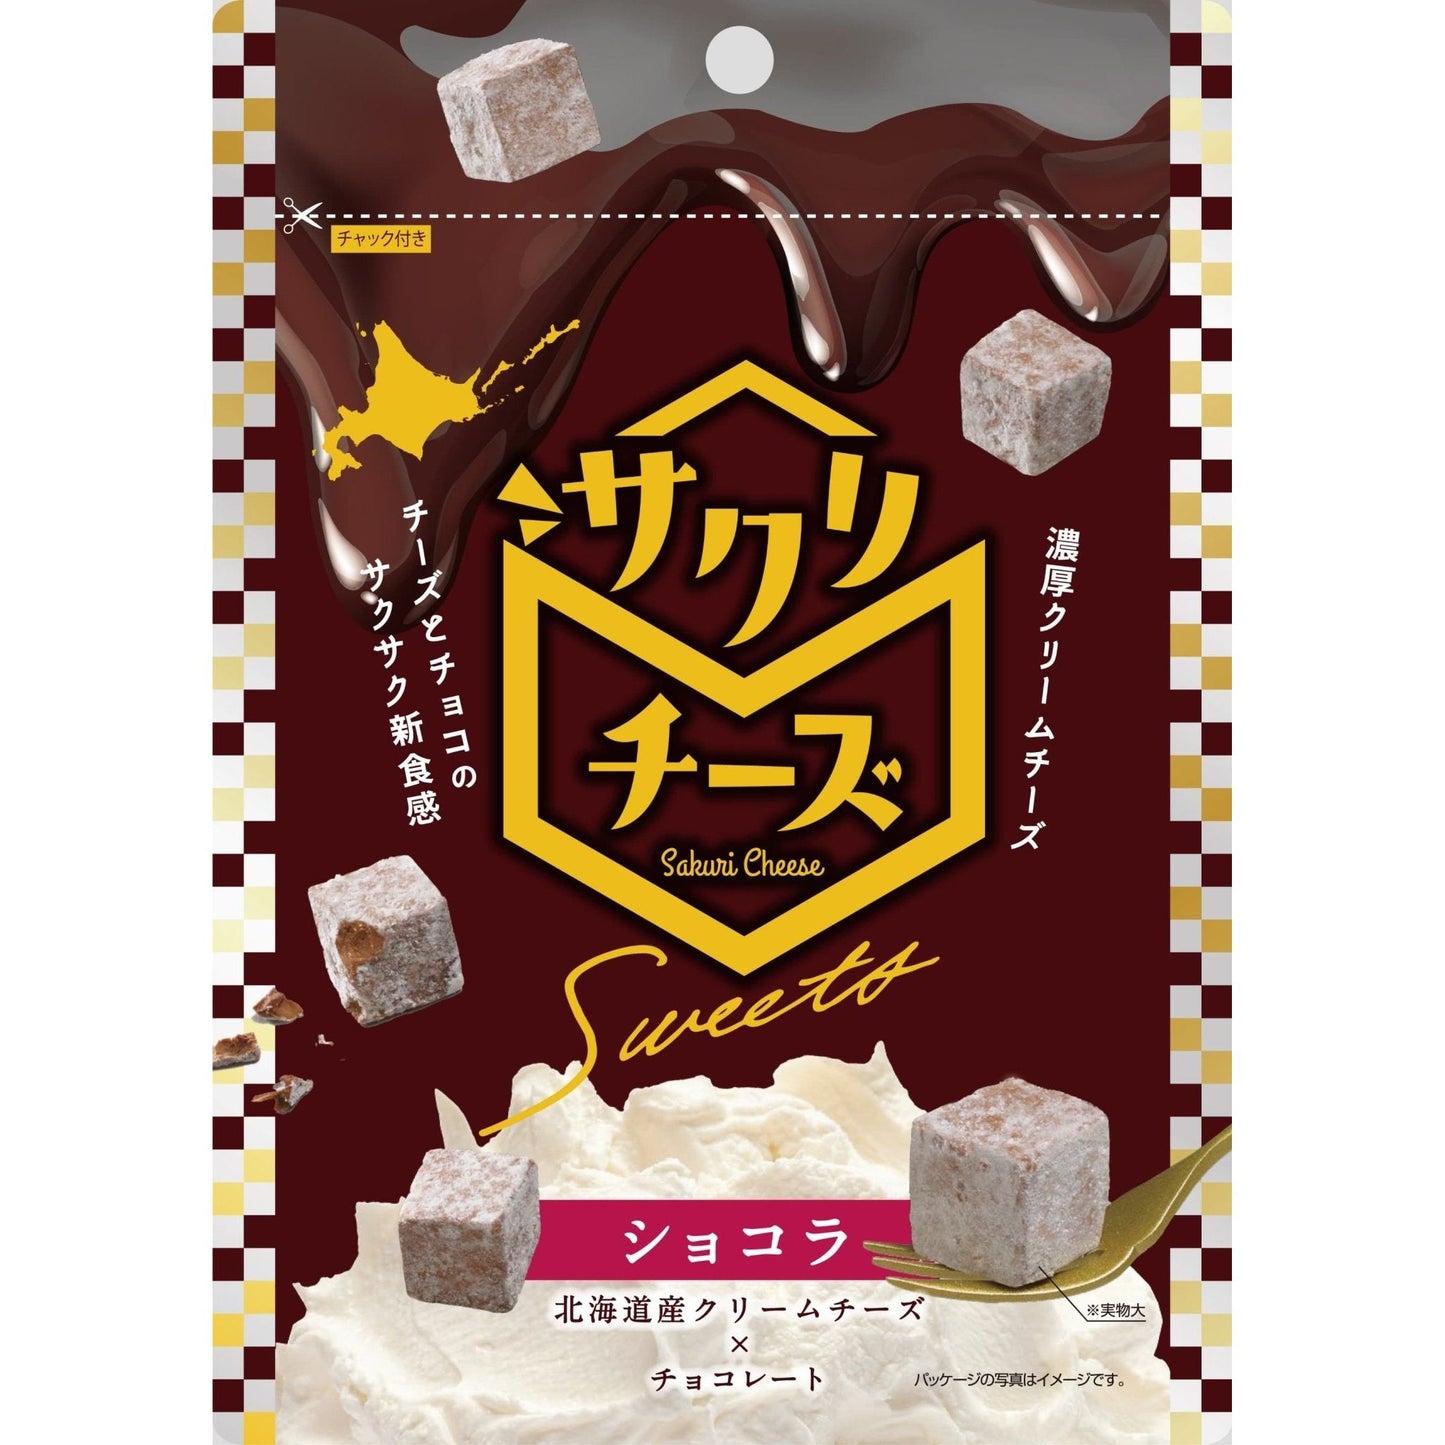 サクリチーズ Sweets ショコラ - ROJI日本橋 ONLINE STORE